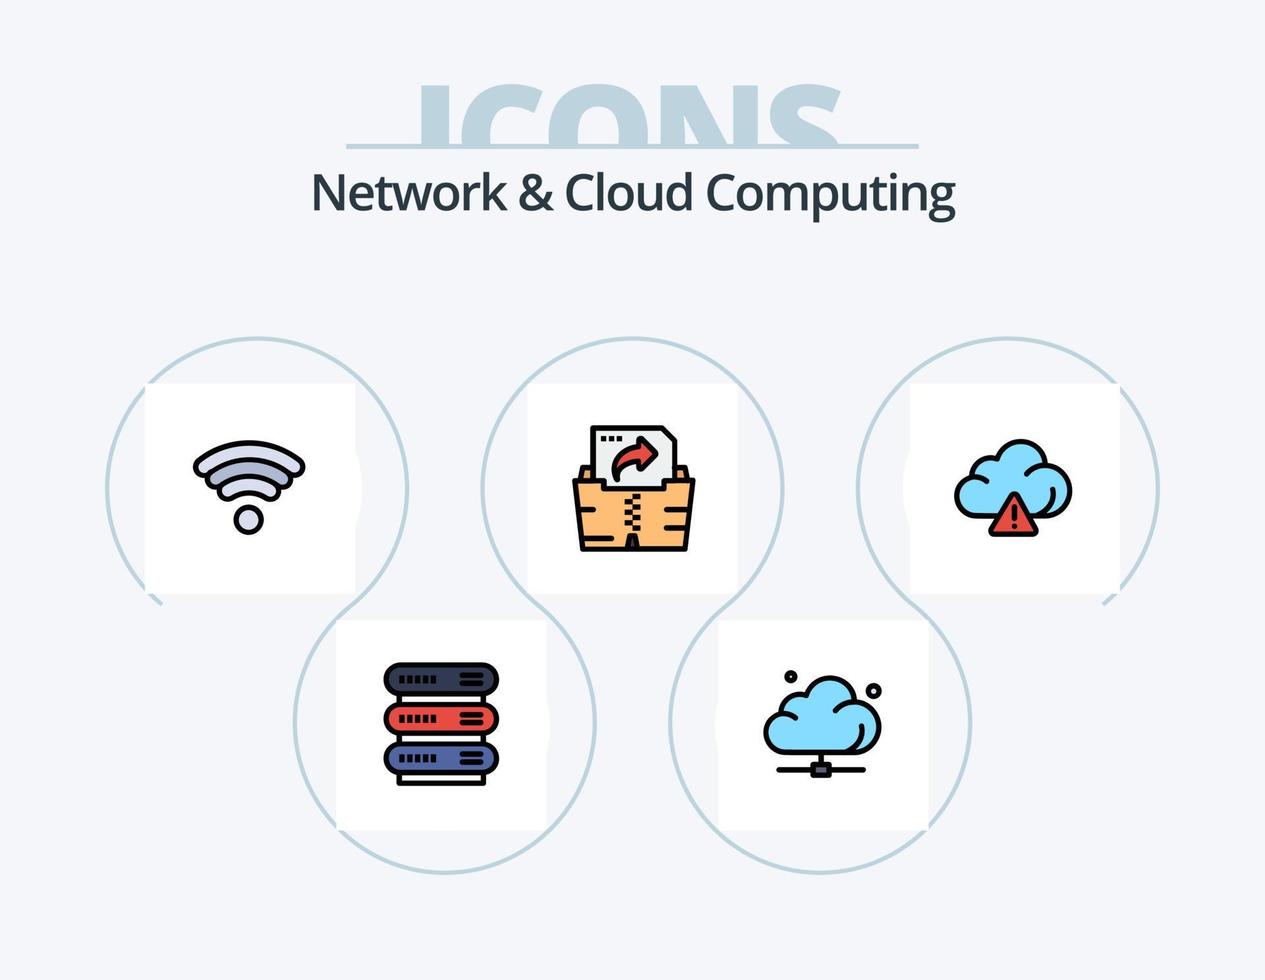 linha de rede e computação em nuvem cheia de ícones pack 5 design de ícones. seta. mensagem. dados. tecnologia. nuvem vetor